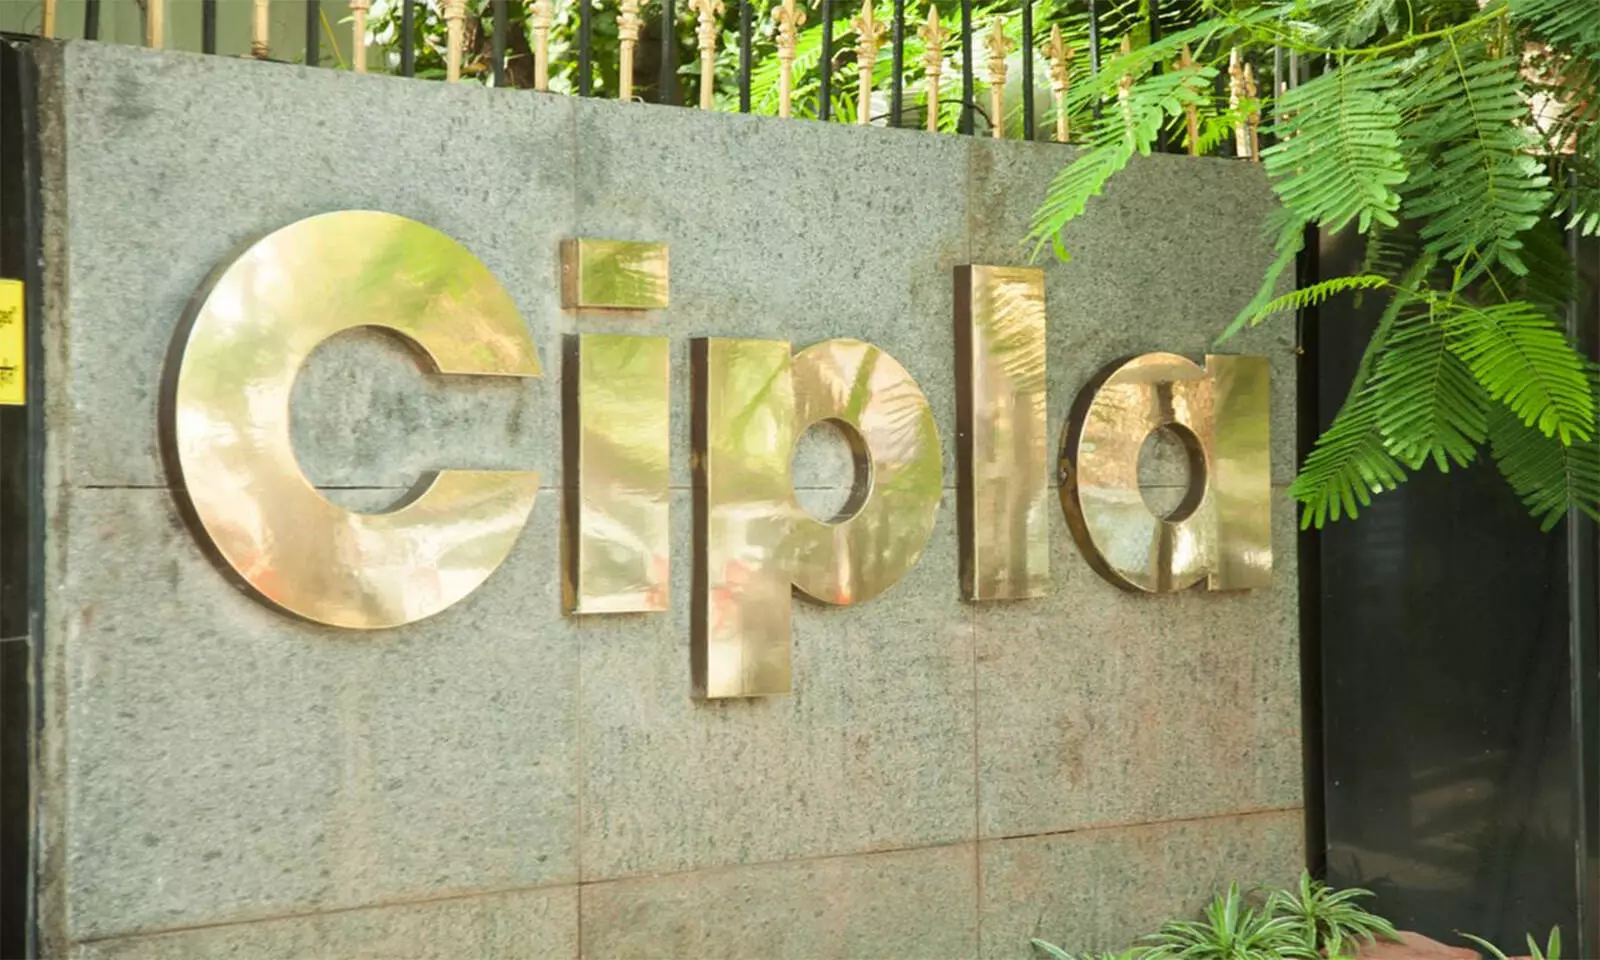 Cipla EU to acquire additional 19.16 percent stake in Cipla Maroc